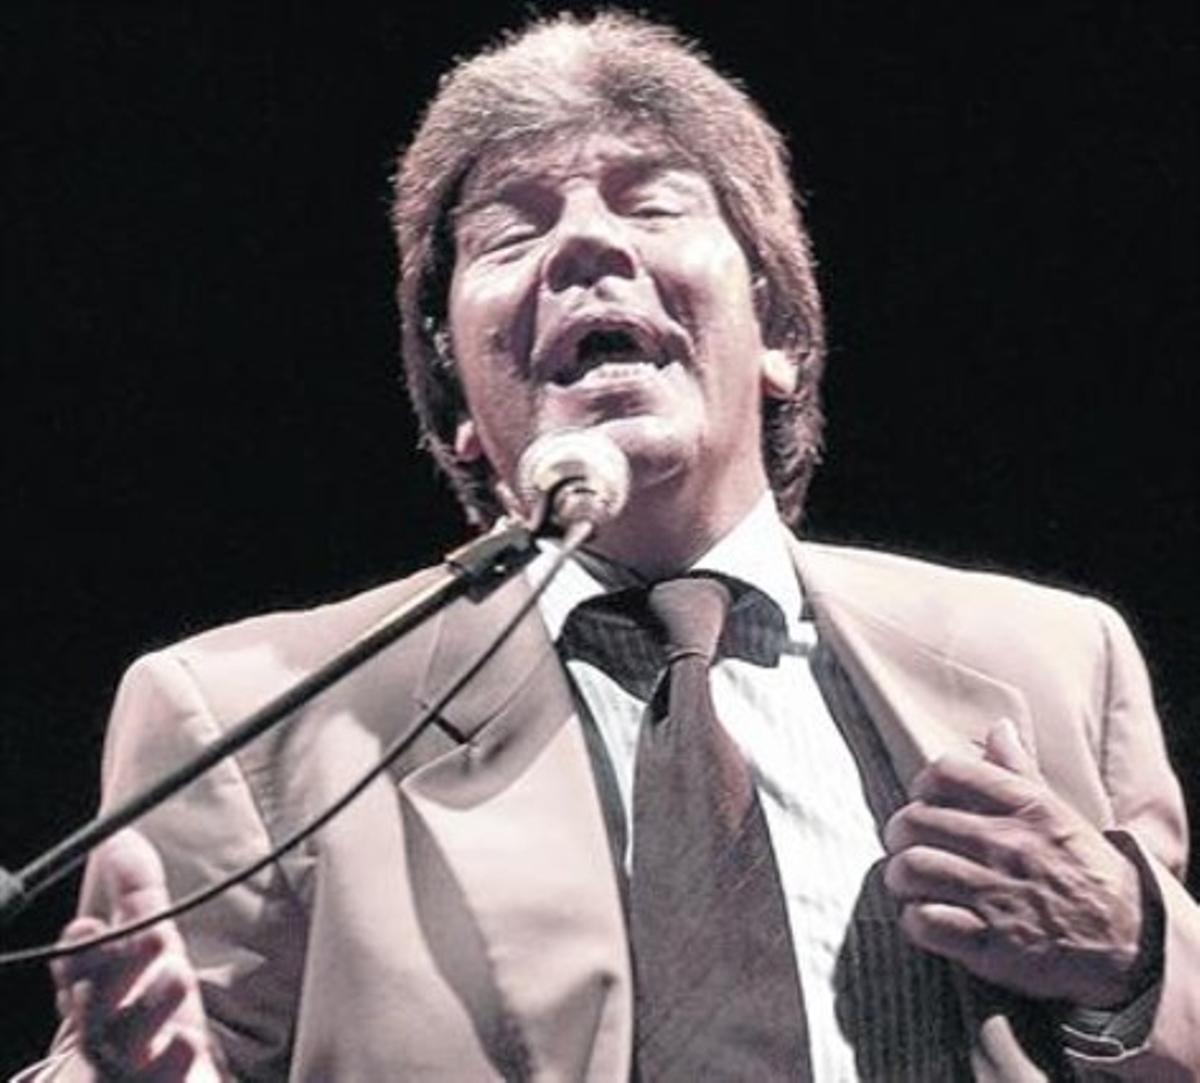 El cantaor Alonso Núñez Núñez, ’Rancapino’.